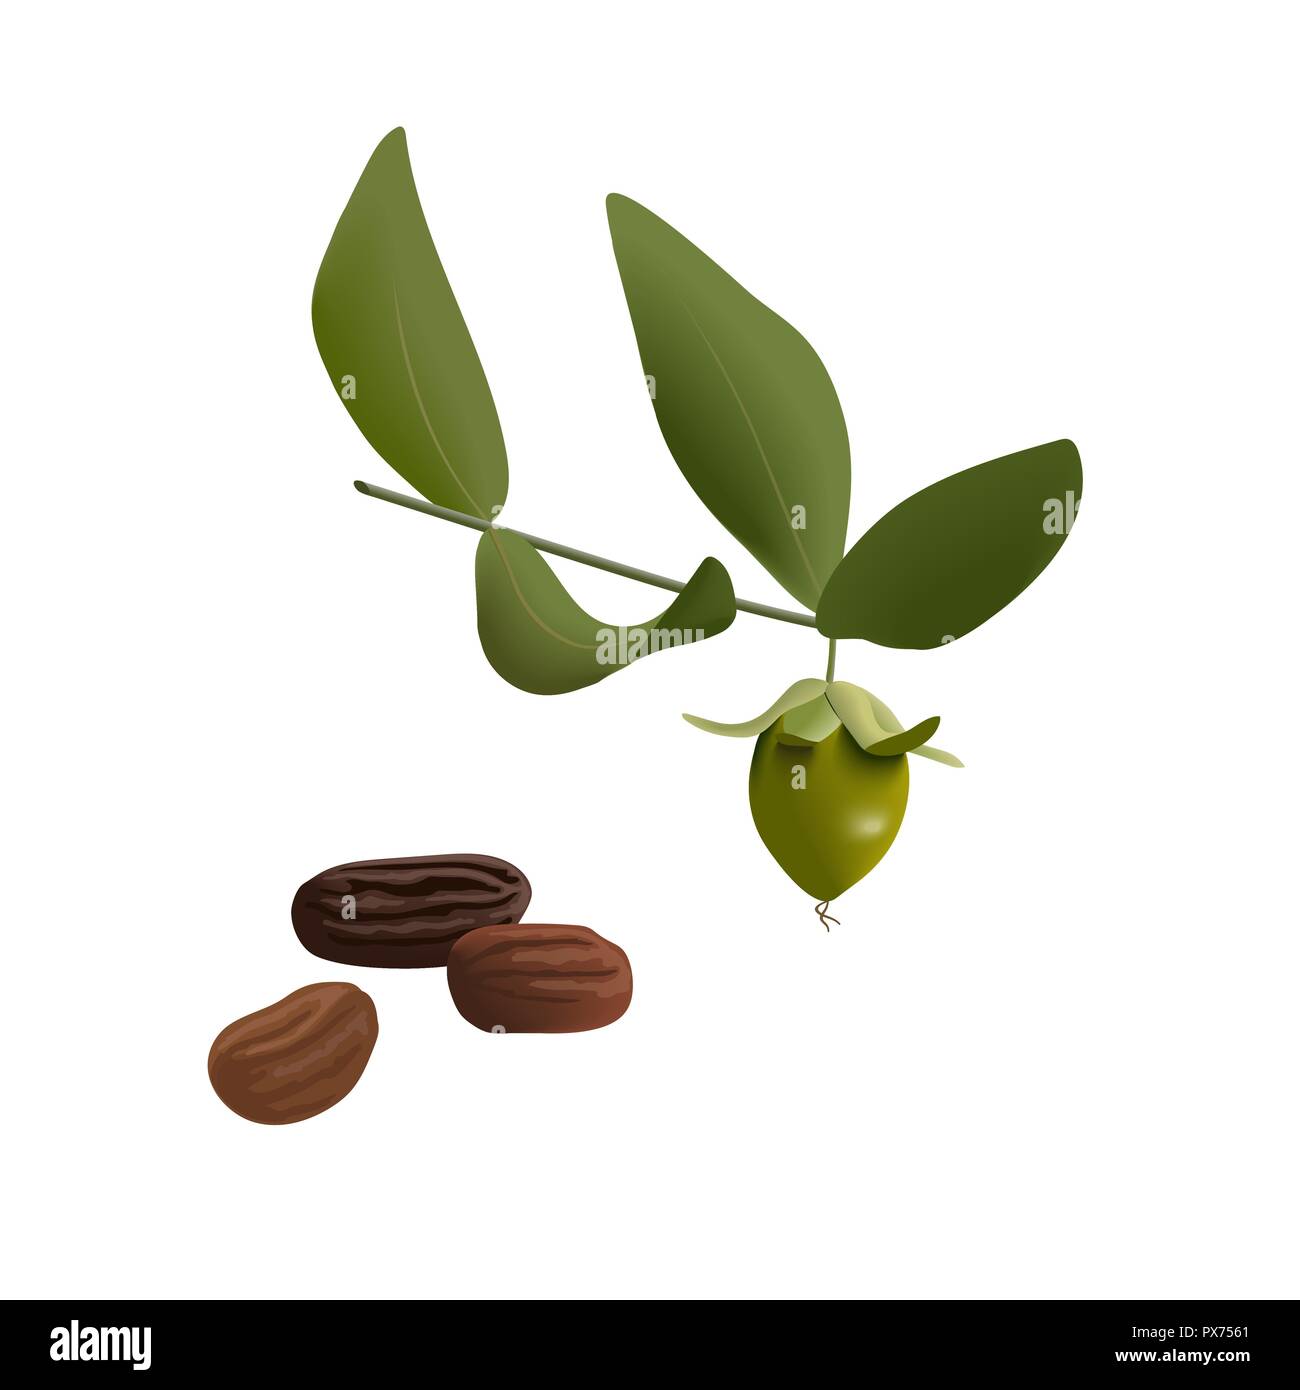 Le jojoba Simmondsia chinensis feuilles avec les graines. Isolé sur withe beckground. vector illustration. Pour la parfumerie, cosmétique, de fines herbes et autre med Illustration de Vecteur